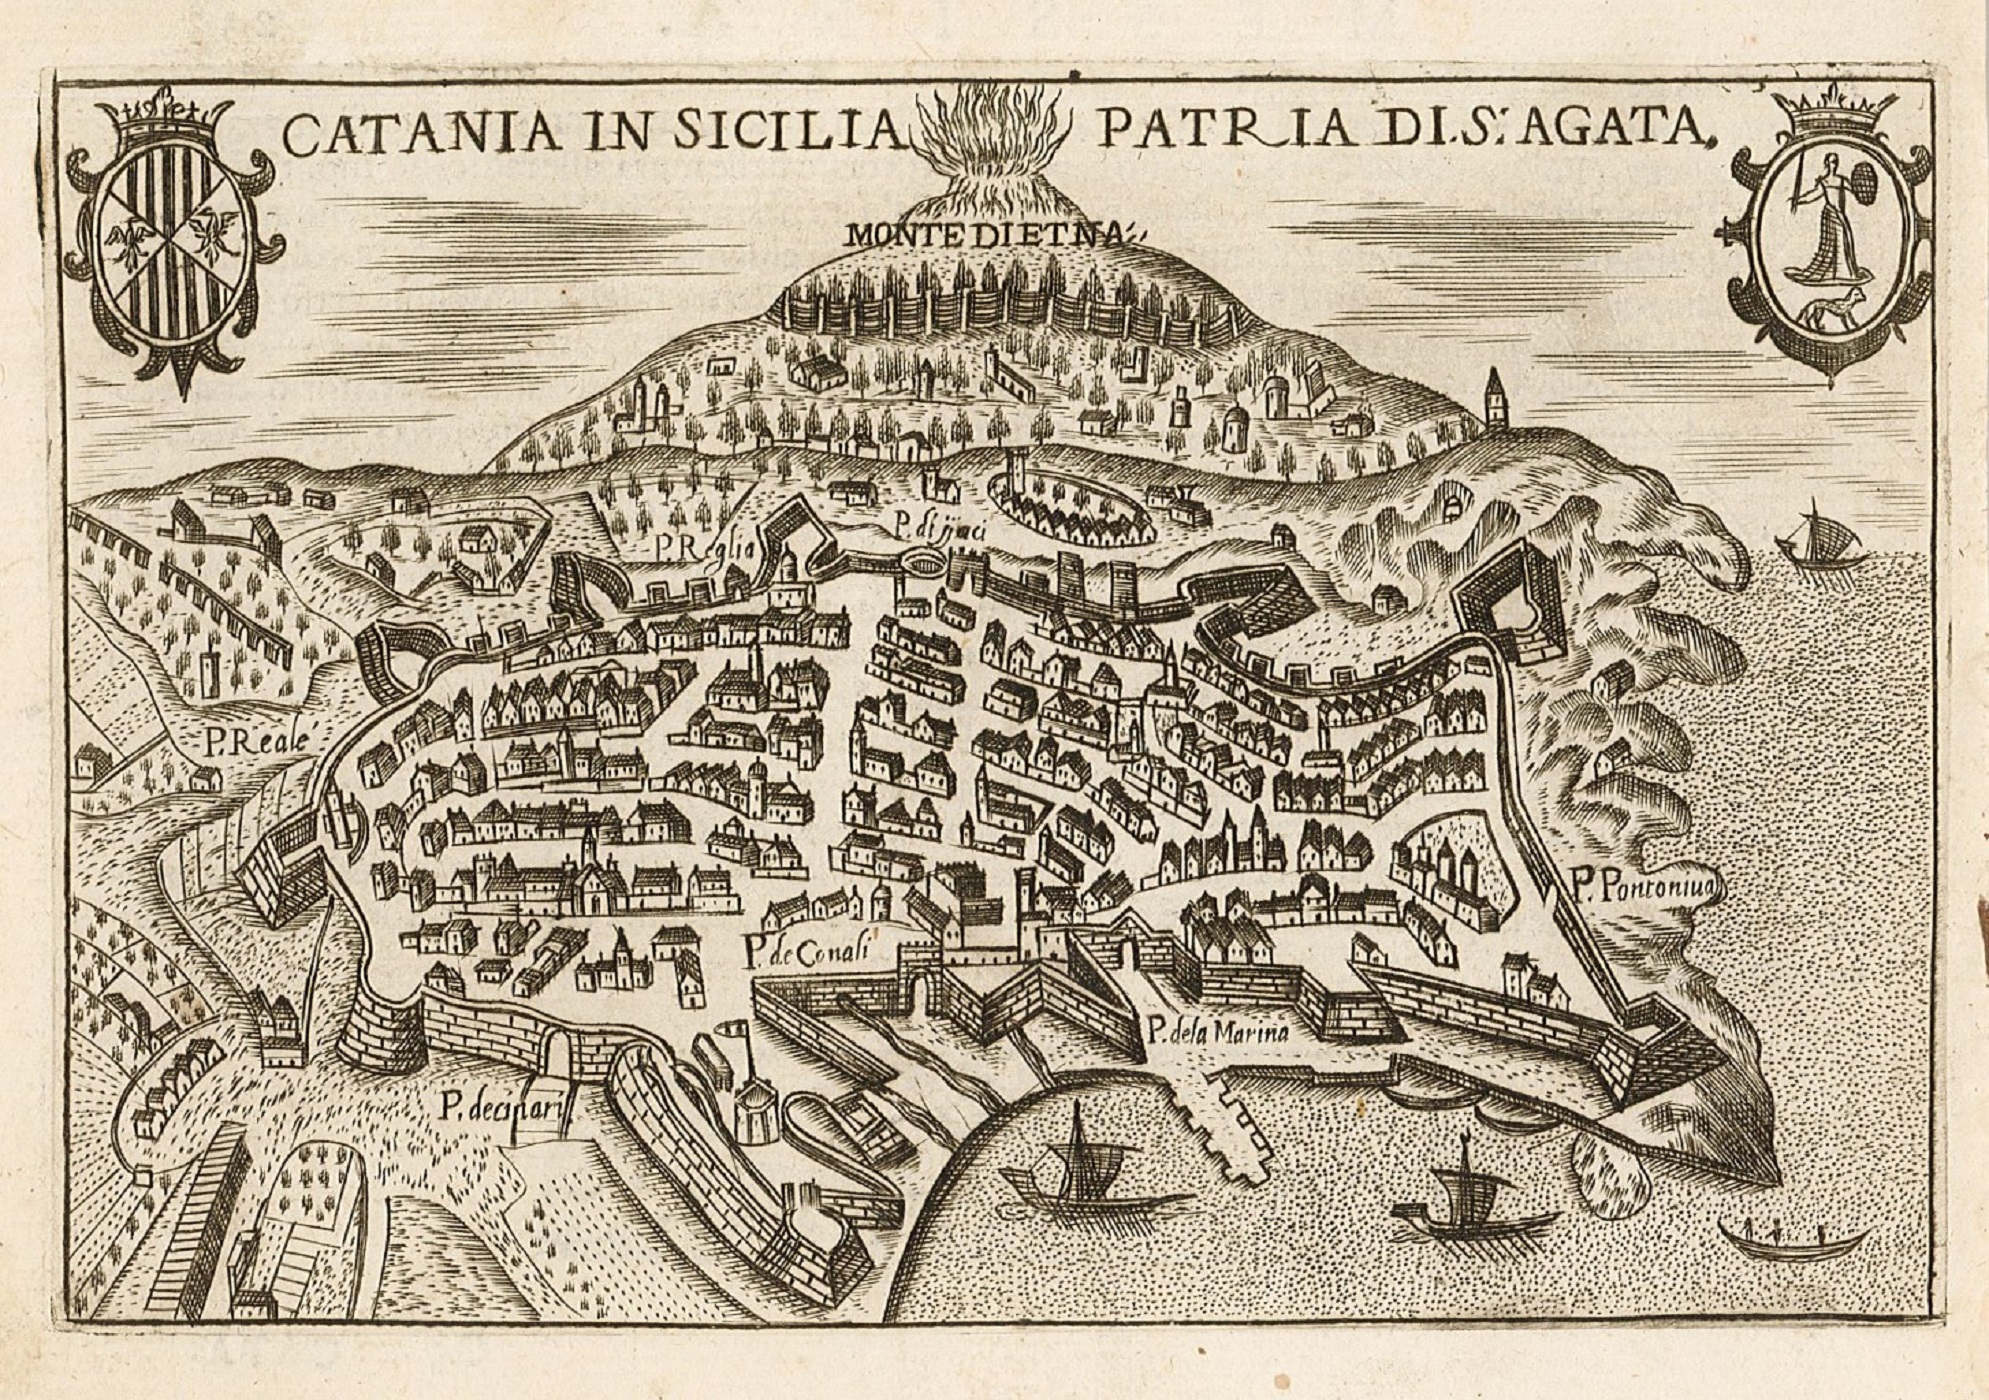 Catania 'caput Sicilia', los catalanes y los elefantes enanos